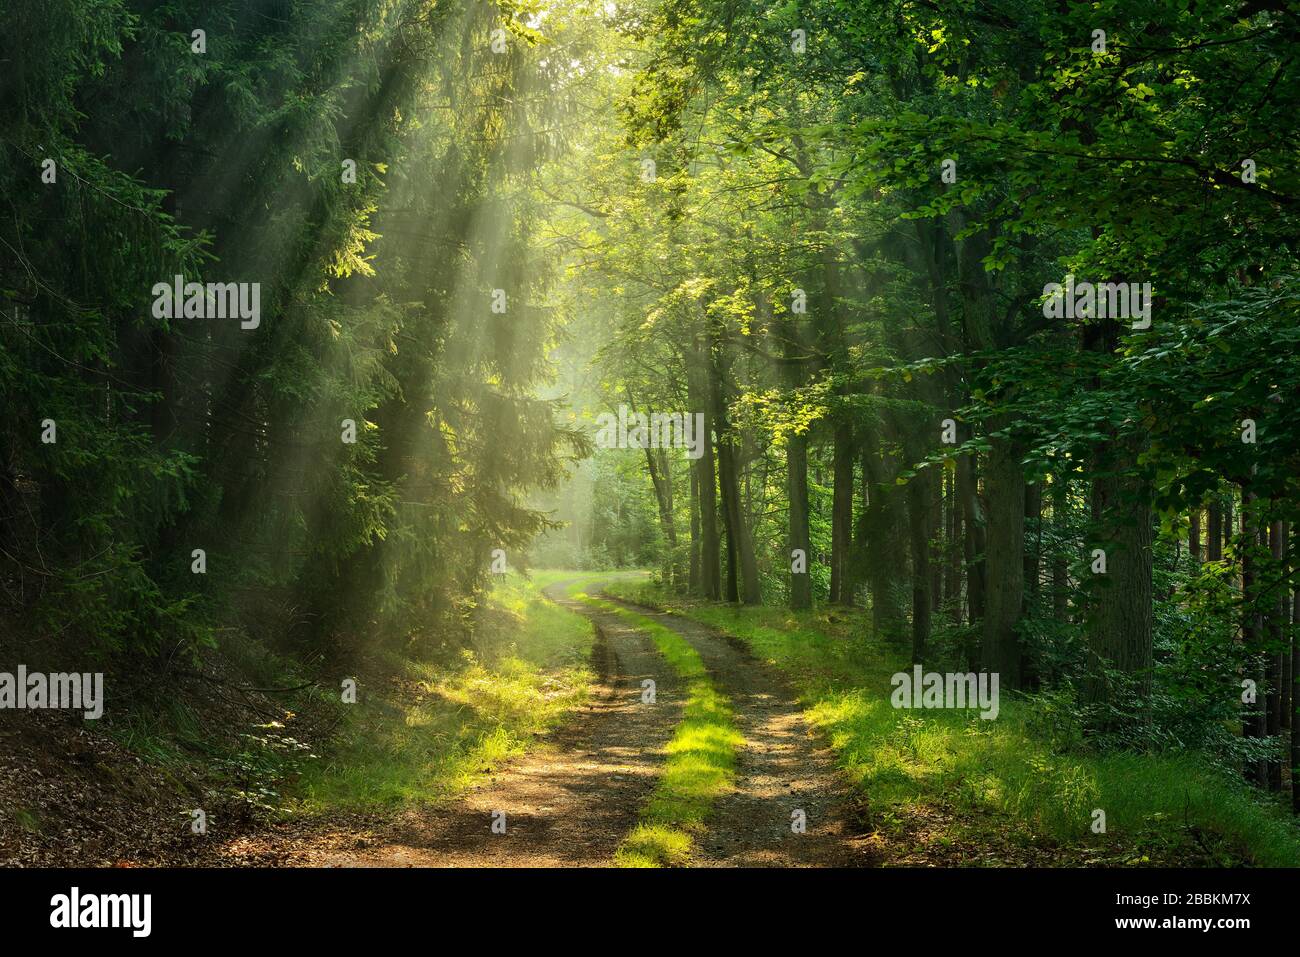 Wanderweg schlängelt sich durch lichtdurchfluteten Wald, Sonne scheint durch Morgennebel, Thüringer Schiefergebirge, bei Bad Lobenstein, Thüringen, Deutschland Stockfoto